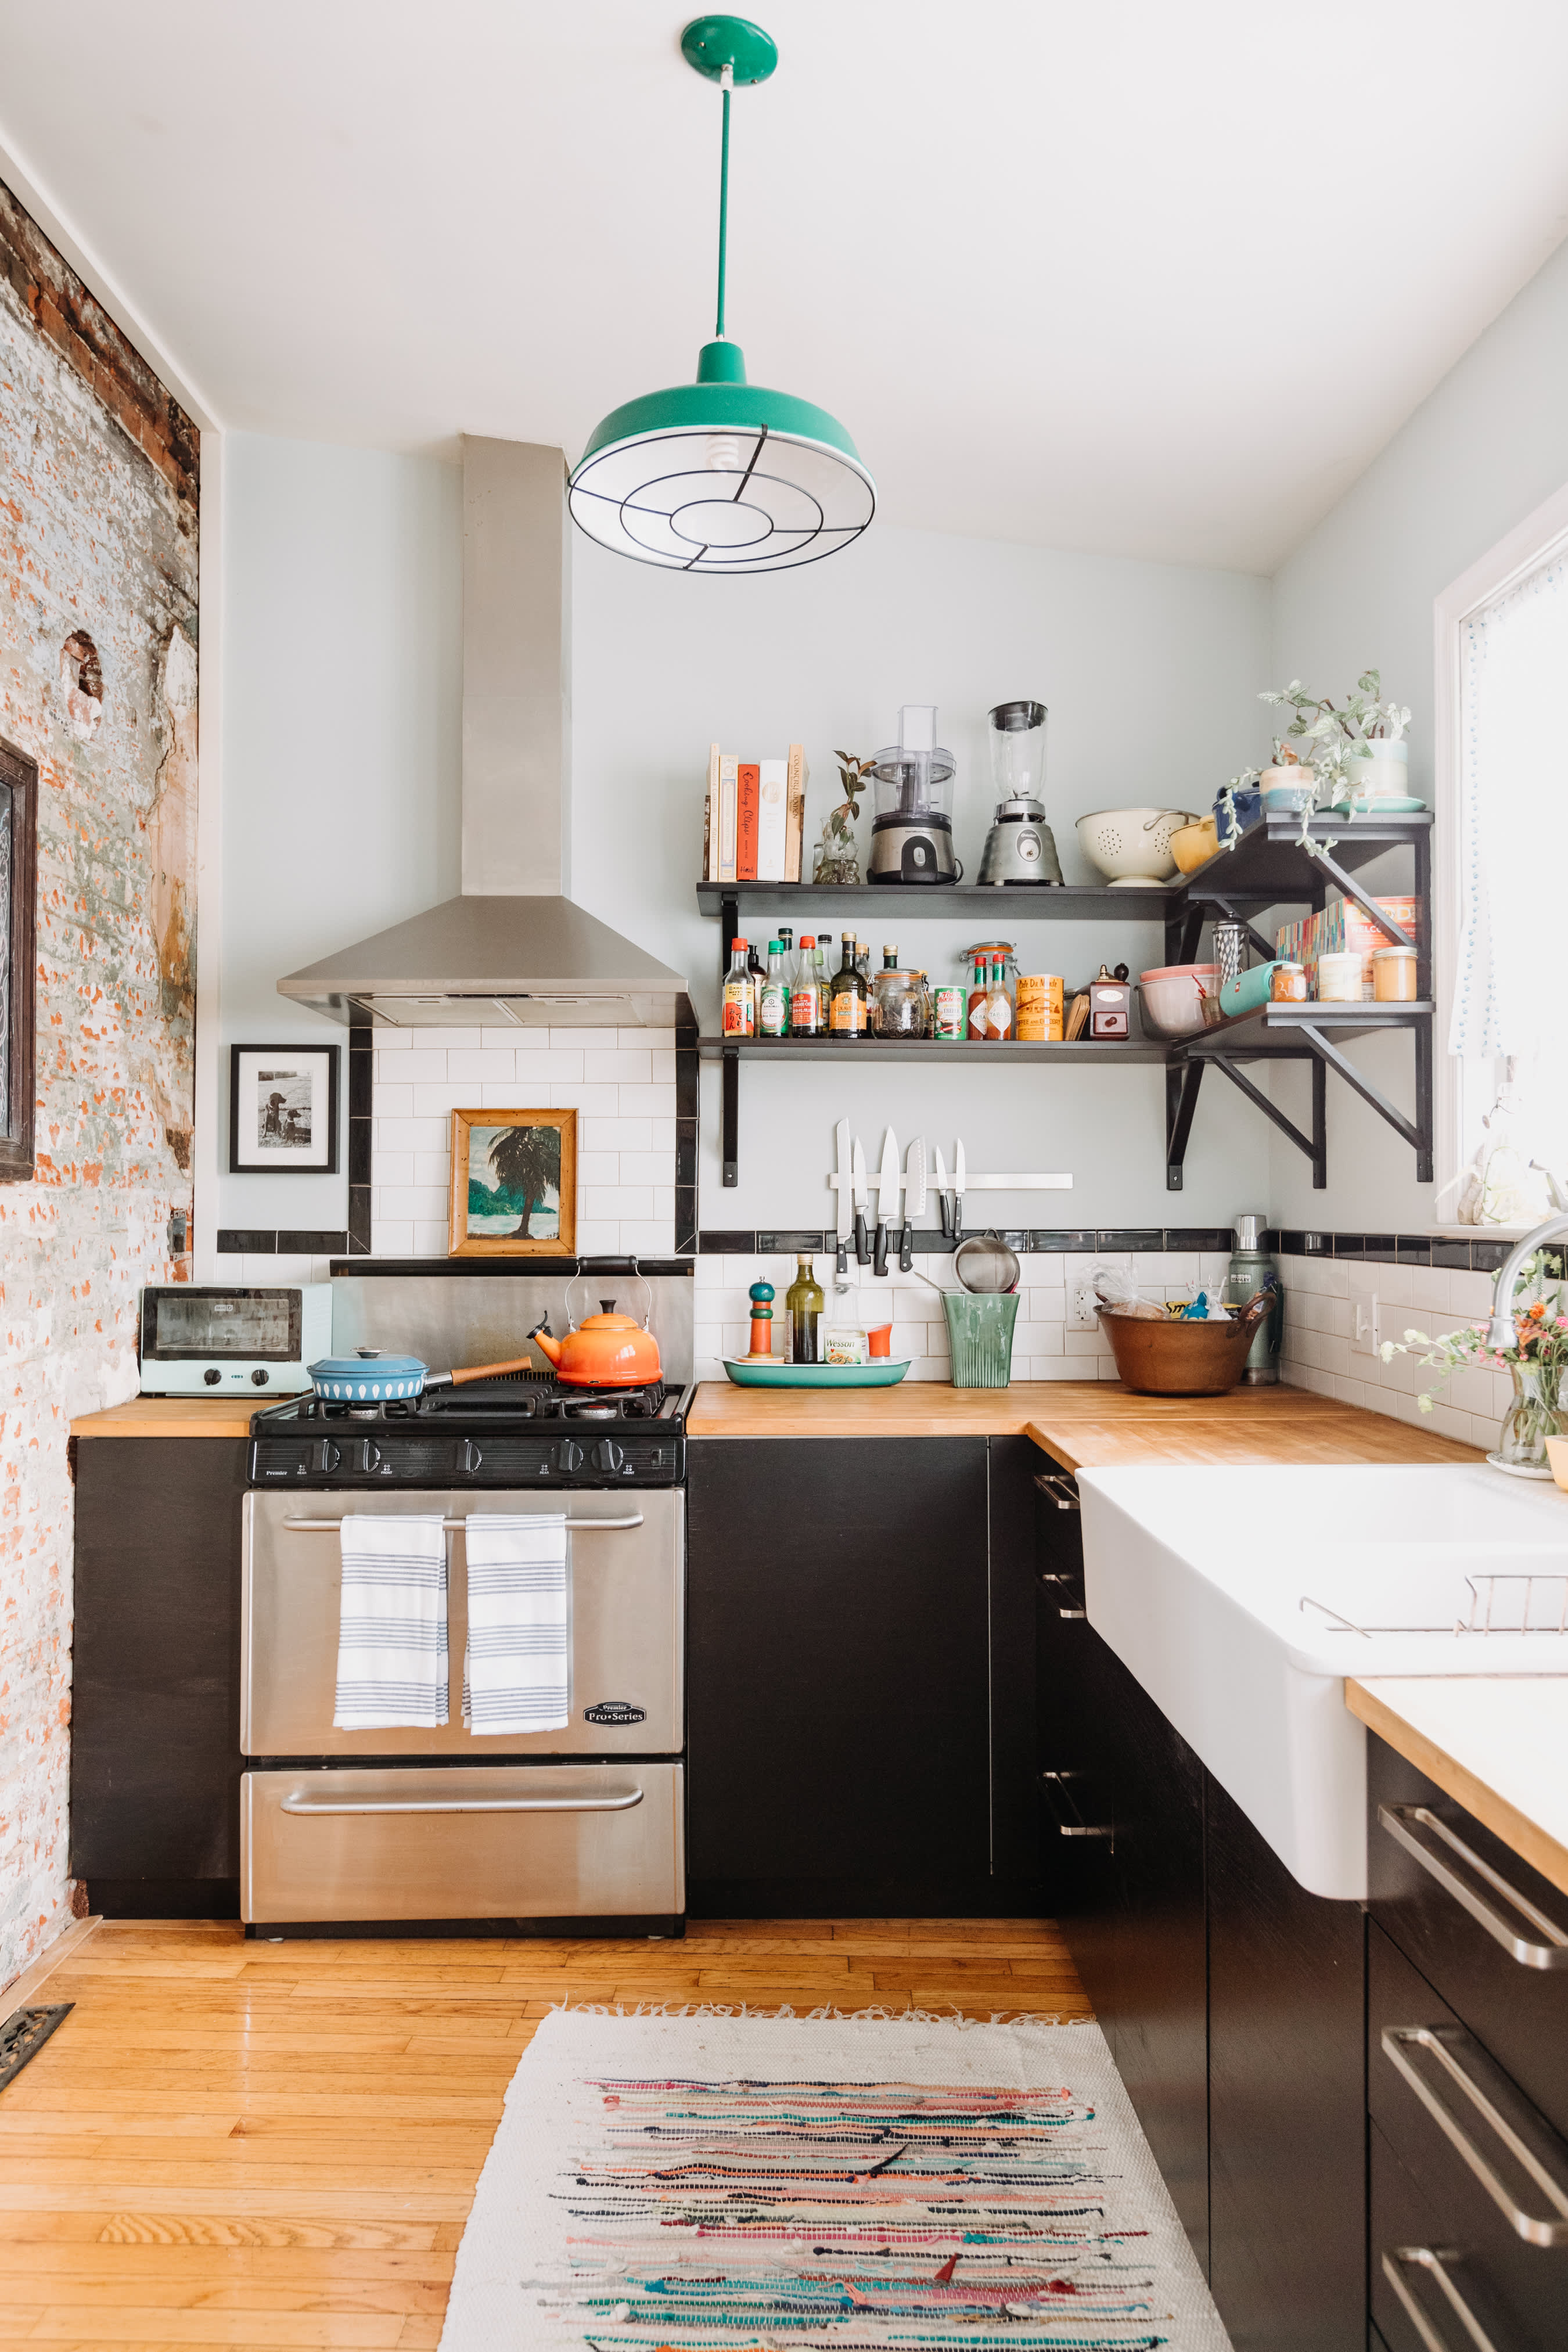 10 elegant kitchen glass door designs for your dream kitchen | Housing News